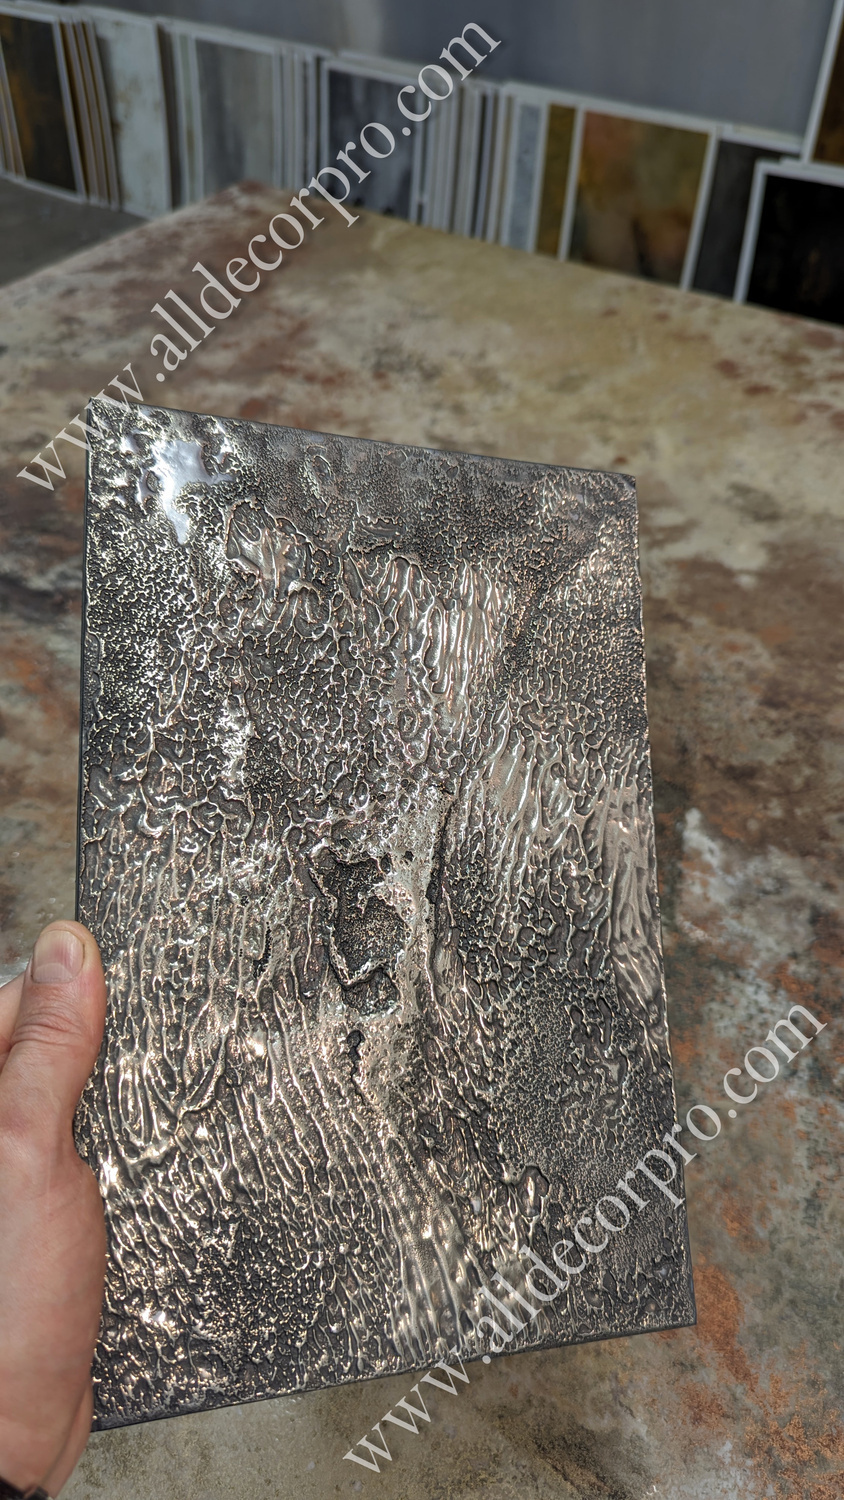 Образец фактурного, декоративного покрытия жидкий металл Metallhaut